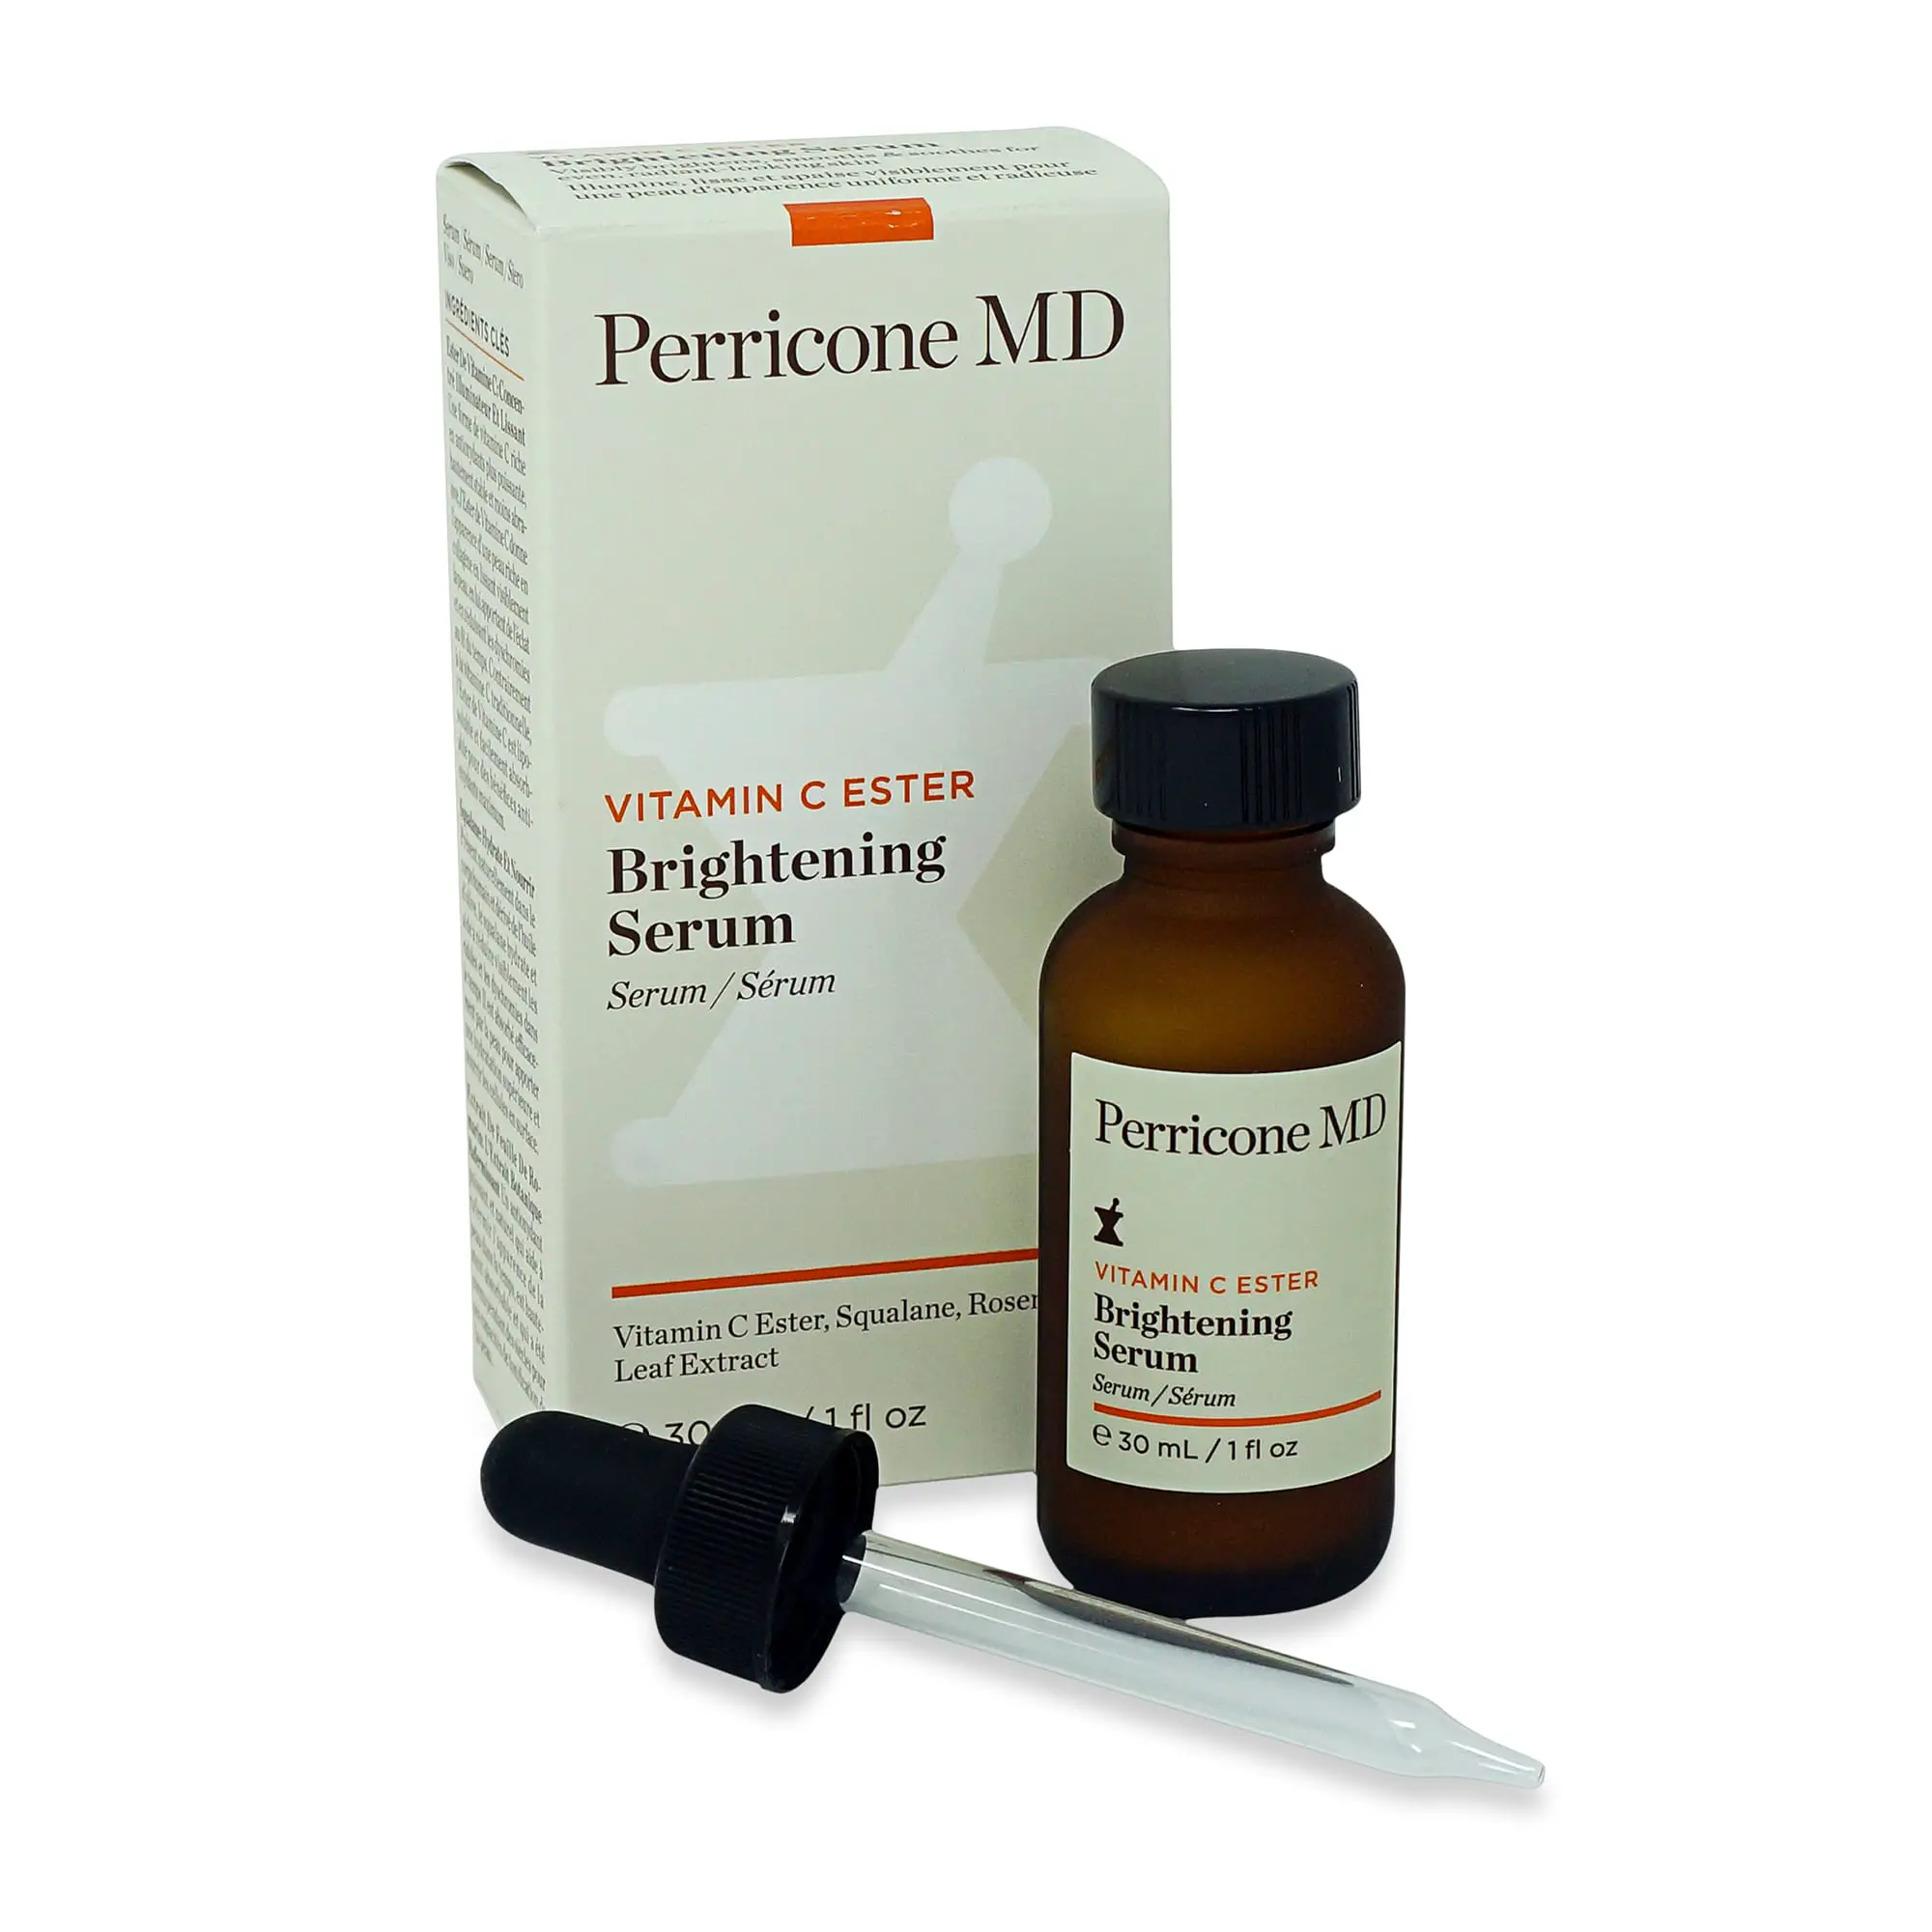 Perricone MD Vitamin C Ester Brightening Serum, 1 oz.